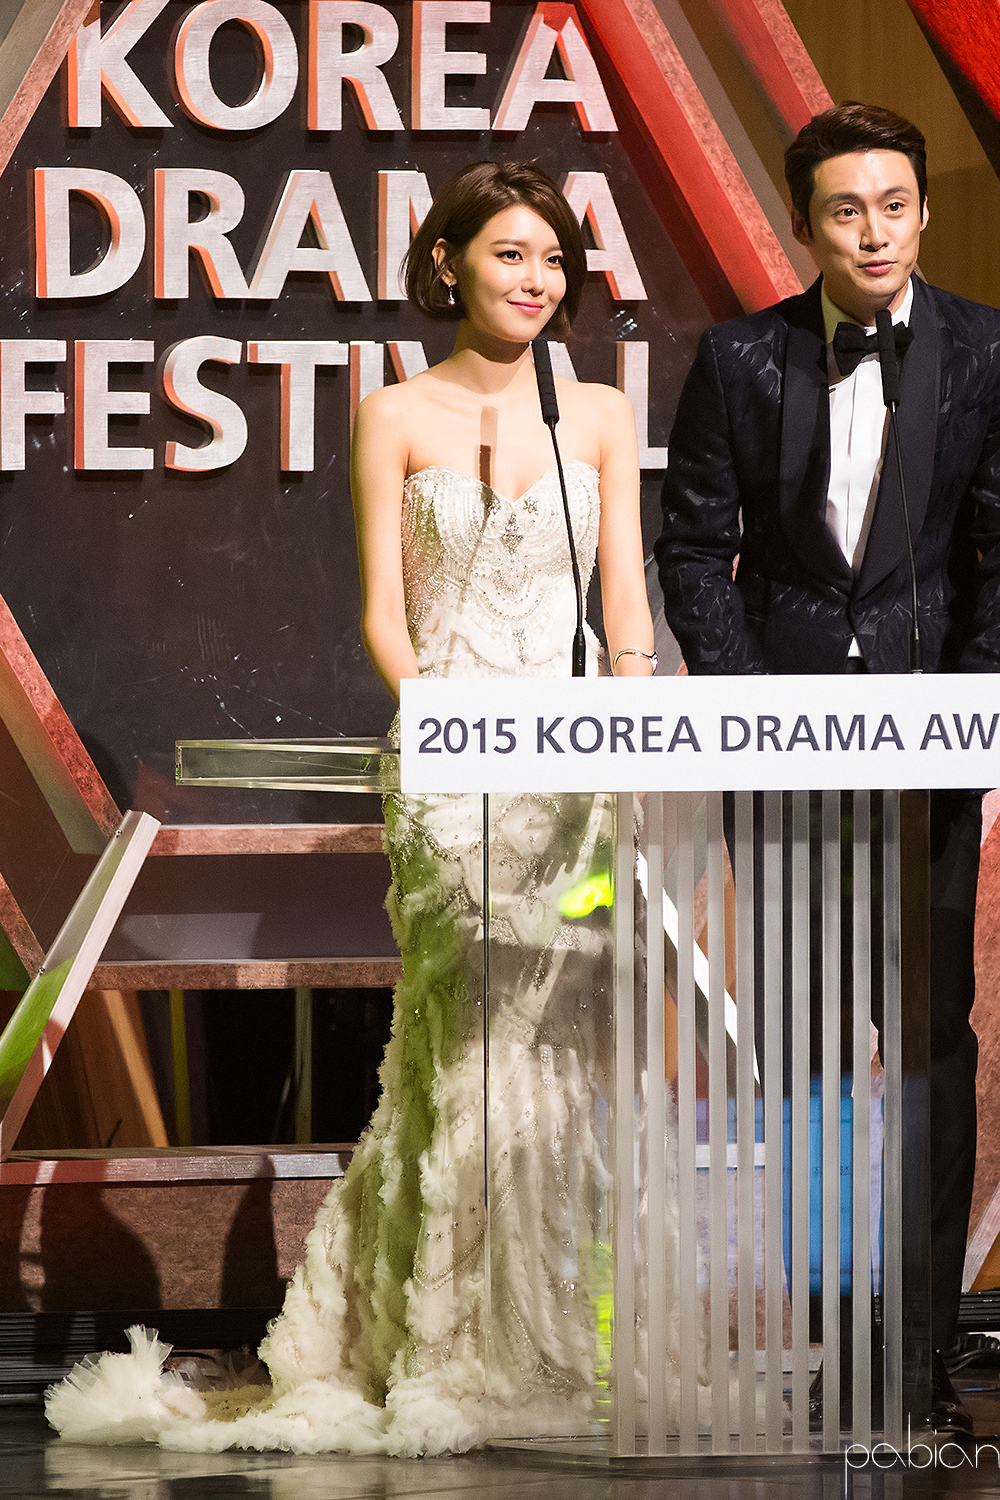 [PIC][09-10-2015]SooYoung đảm nhận vai trò MC cho "2015 Korea Drama Awards" + Nhận giải "Female Excellence Award" vào hôm nay 2104B250561B89EB159DBC